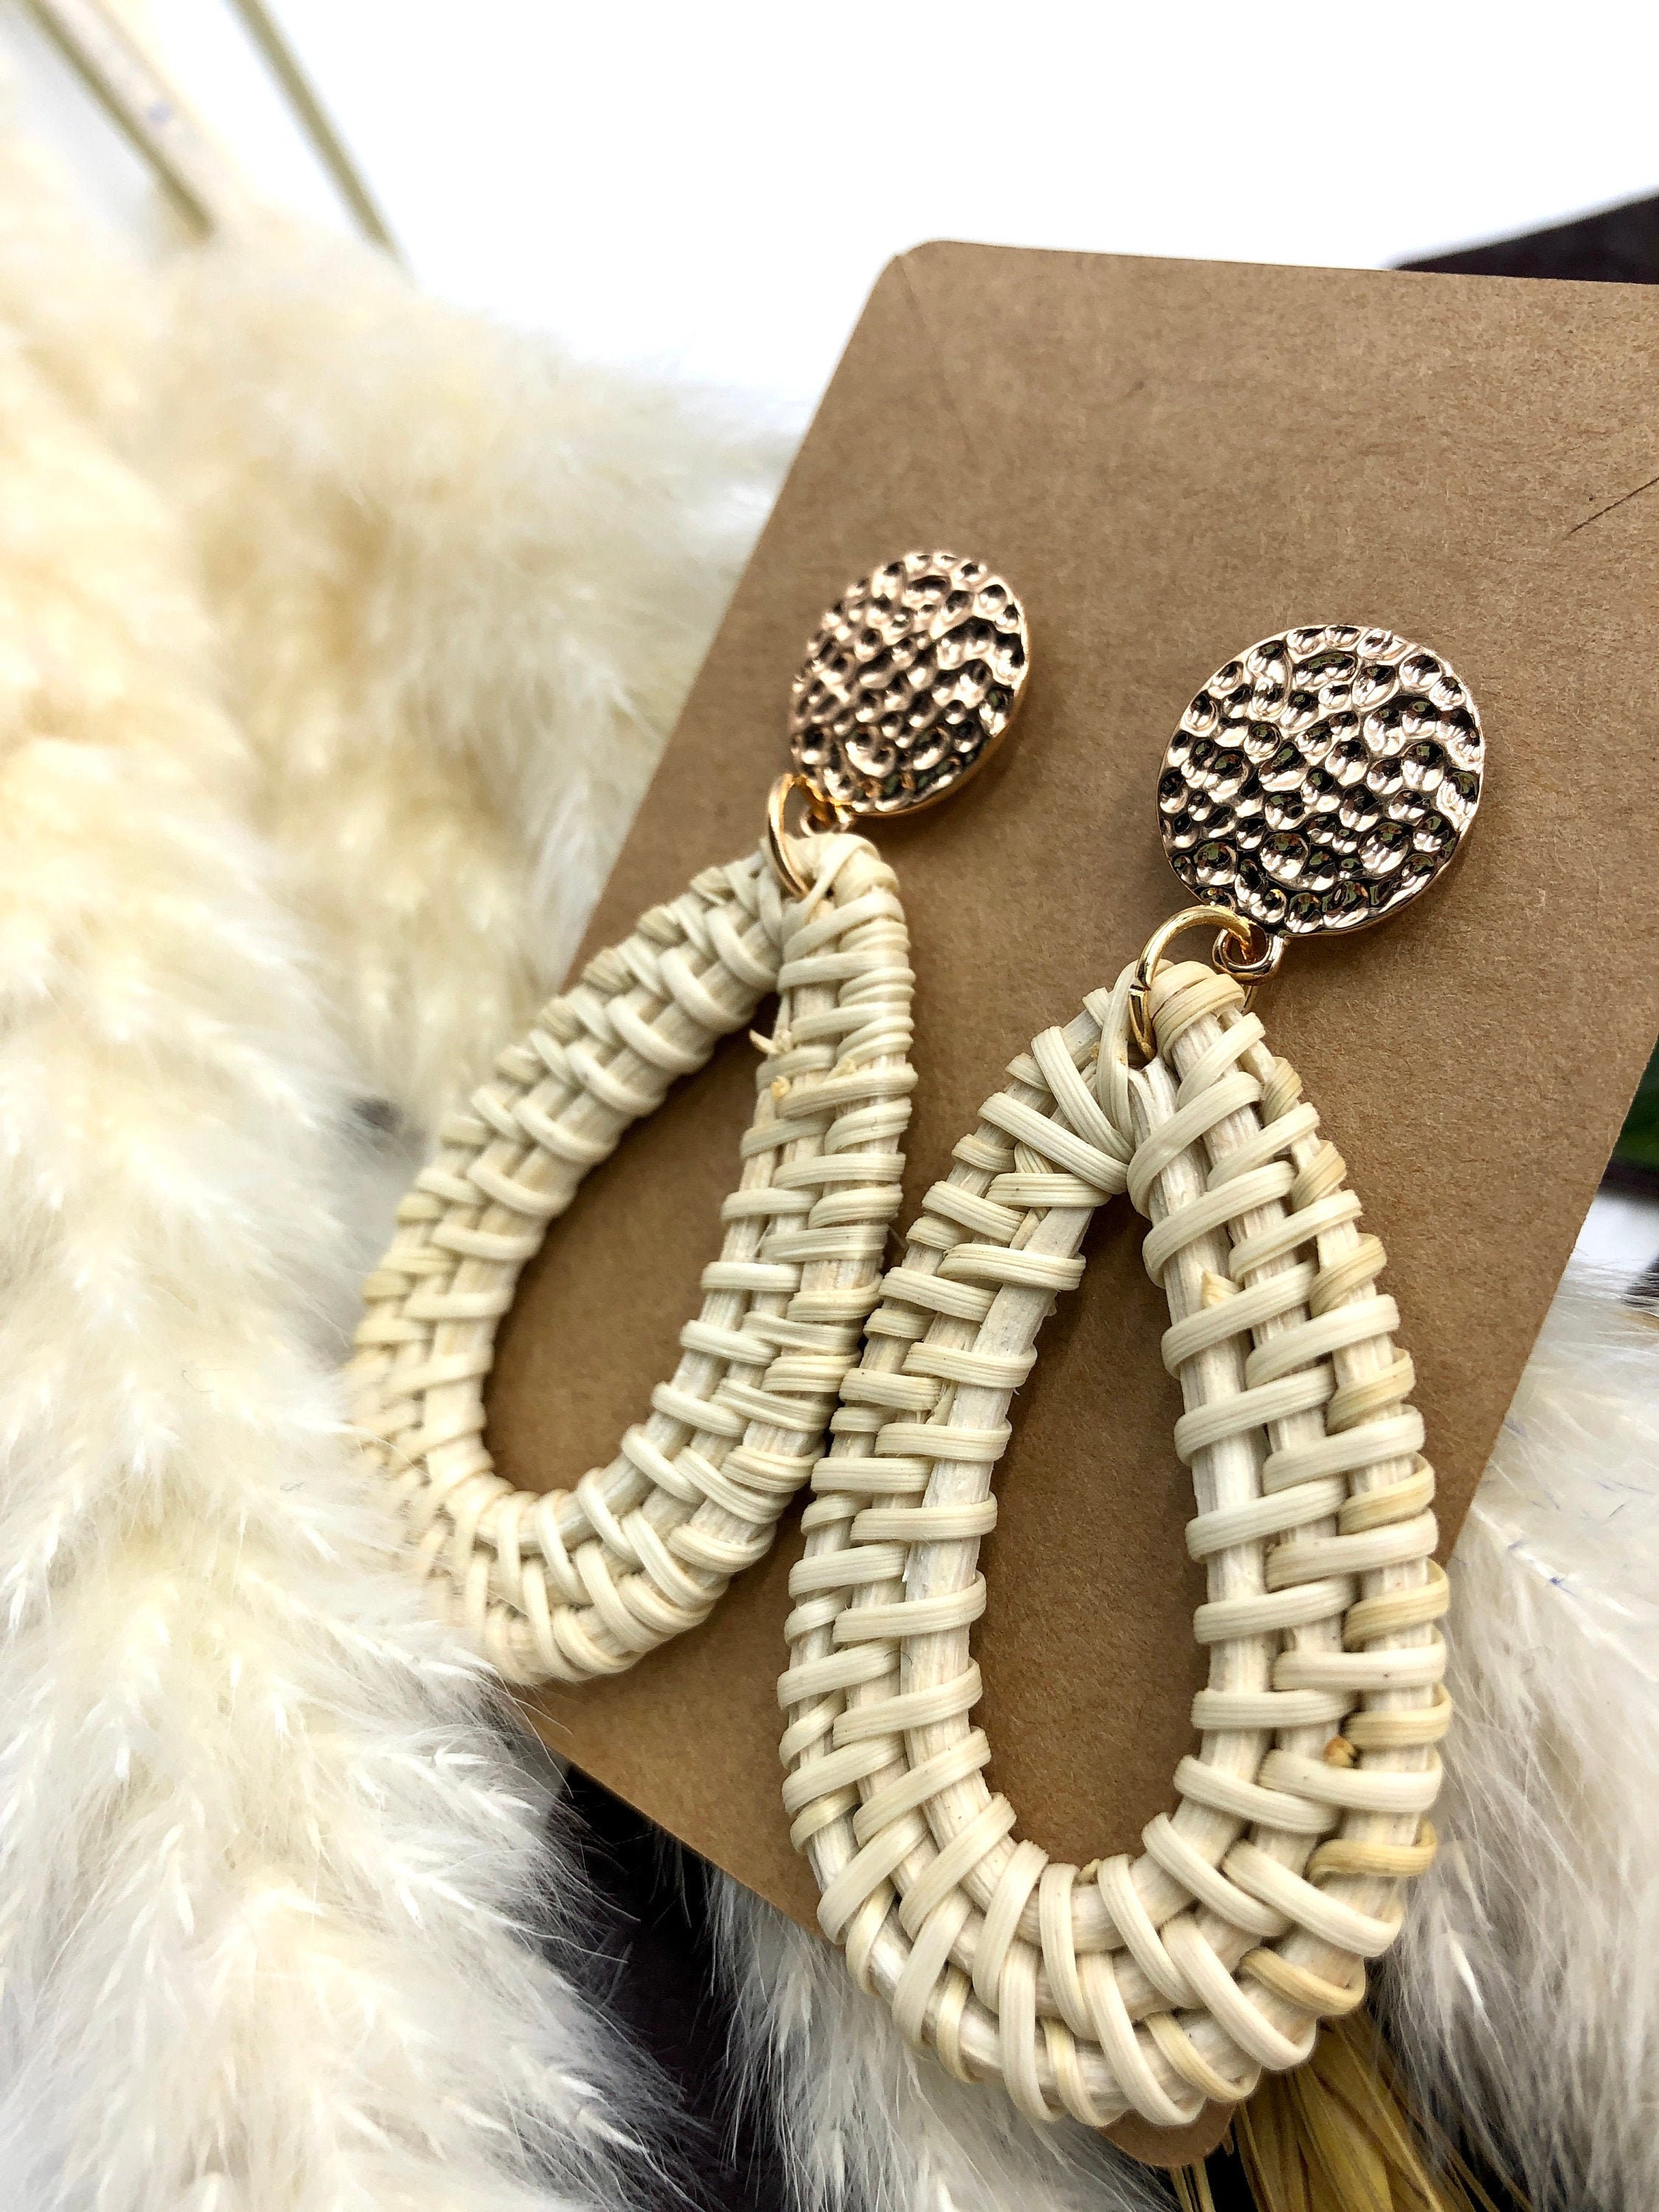 Freya Branwyn  Bohemian Inspired Rings Necklaces Earrings Bracelets